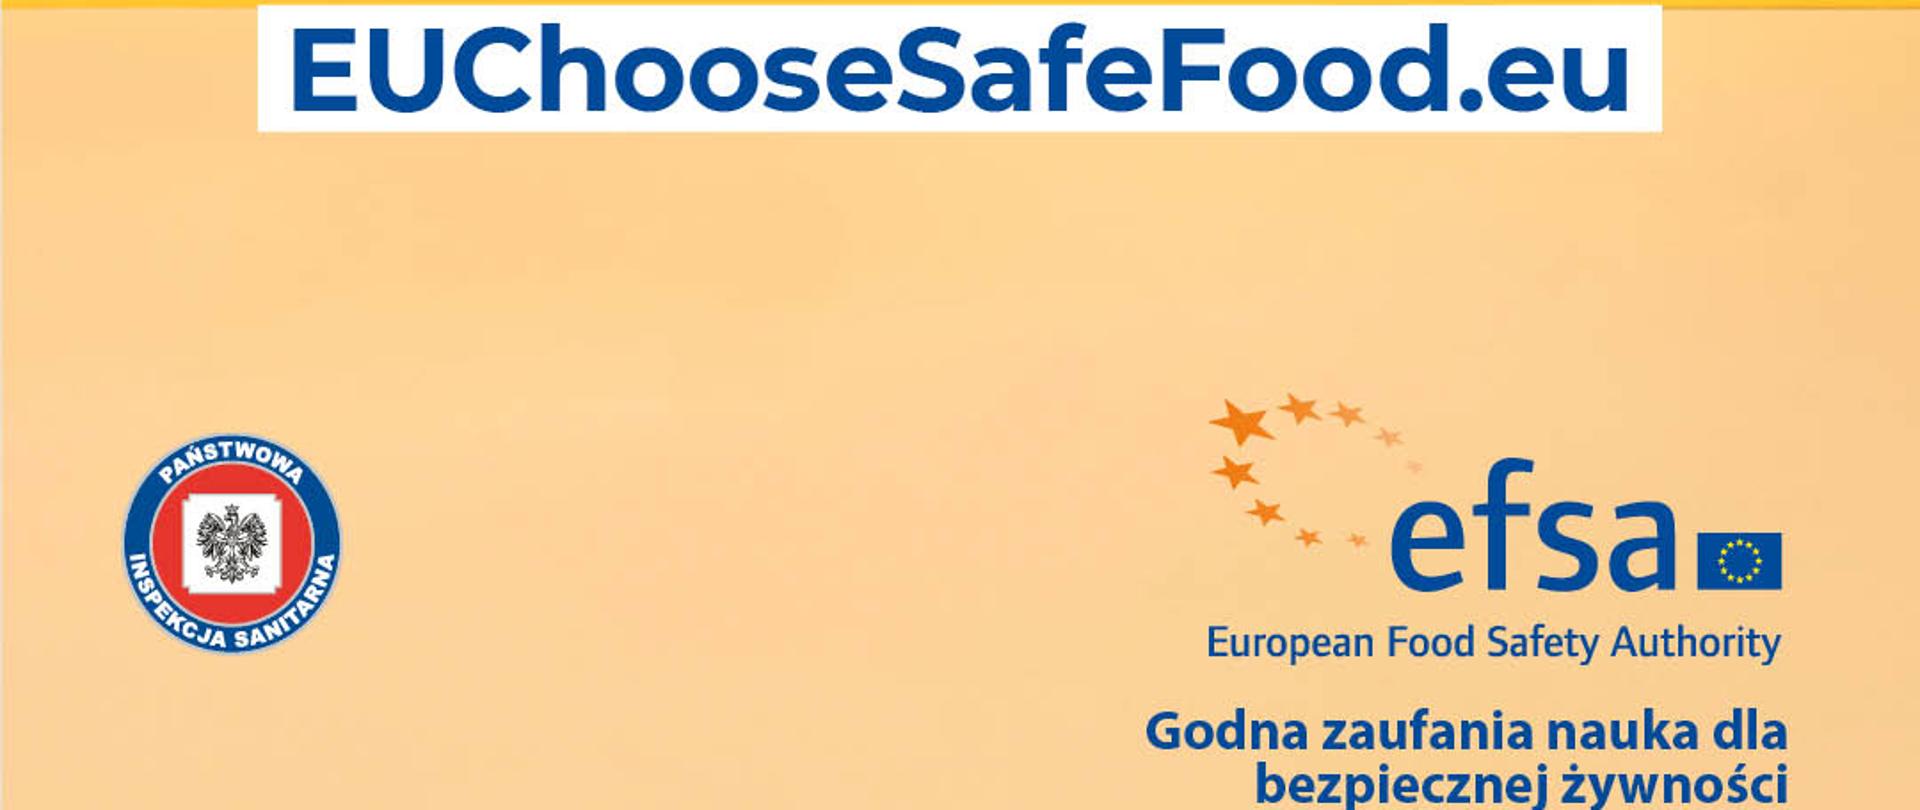 „Wybieraj Bezpieczną Żywność” #EUChooseSafeFood